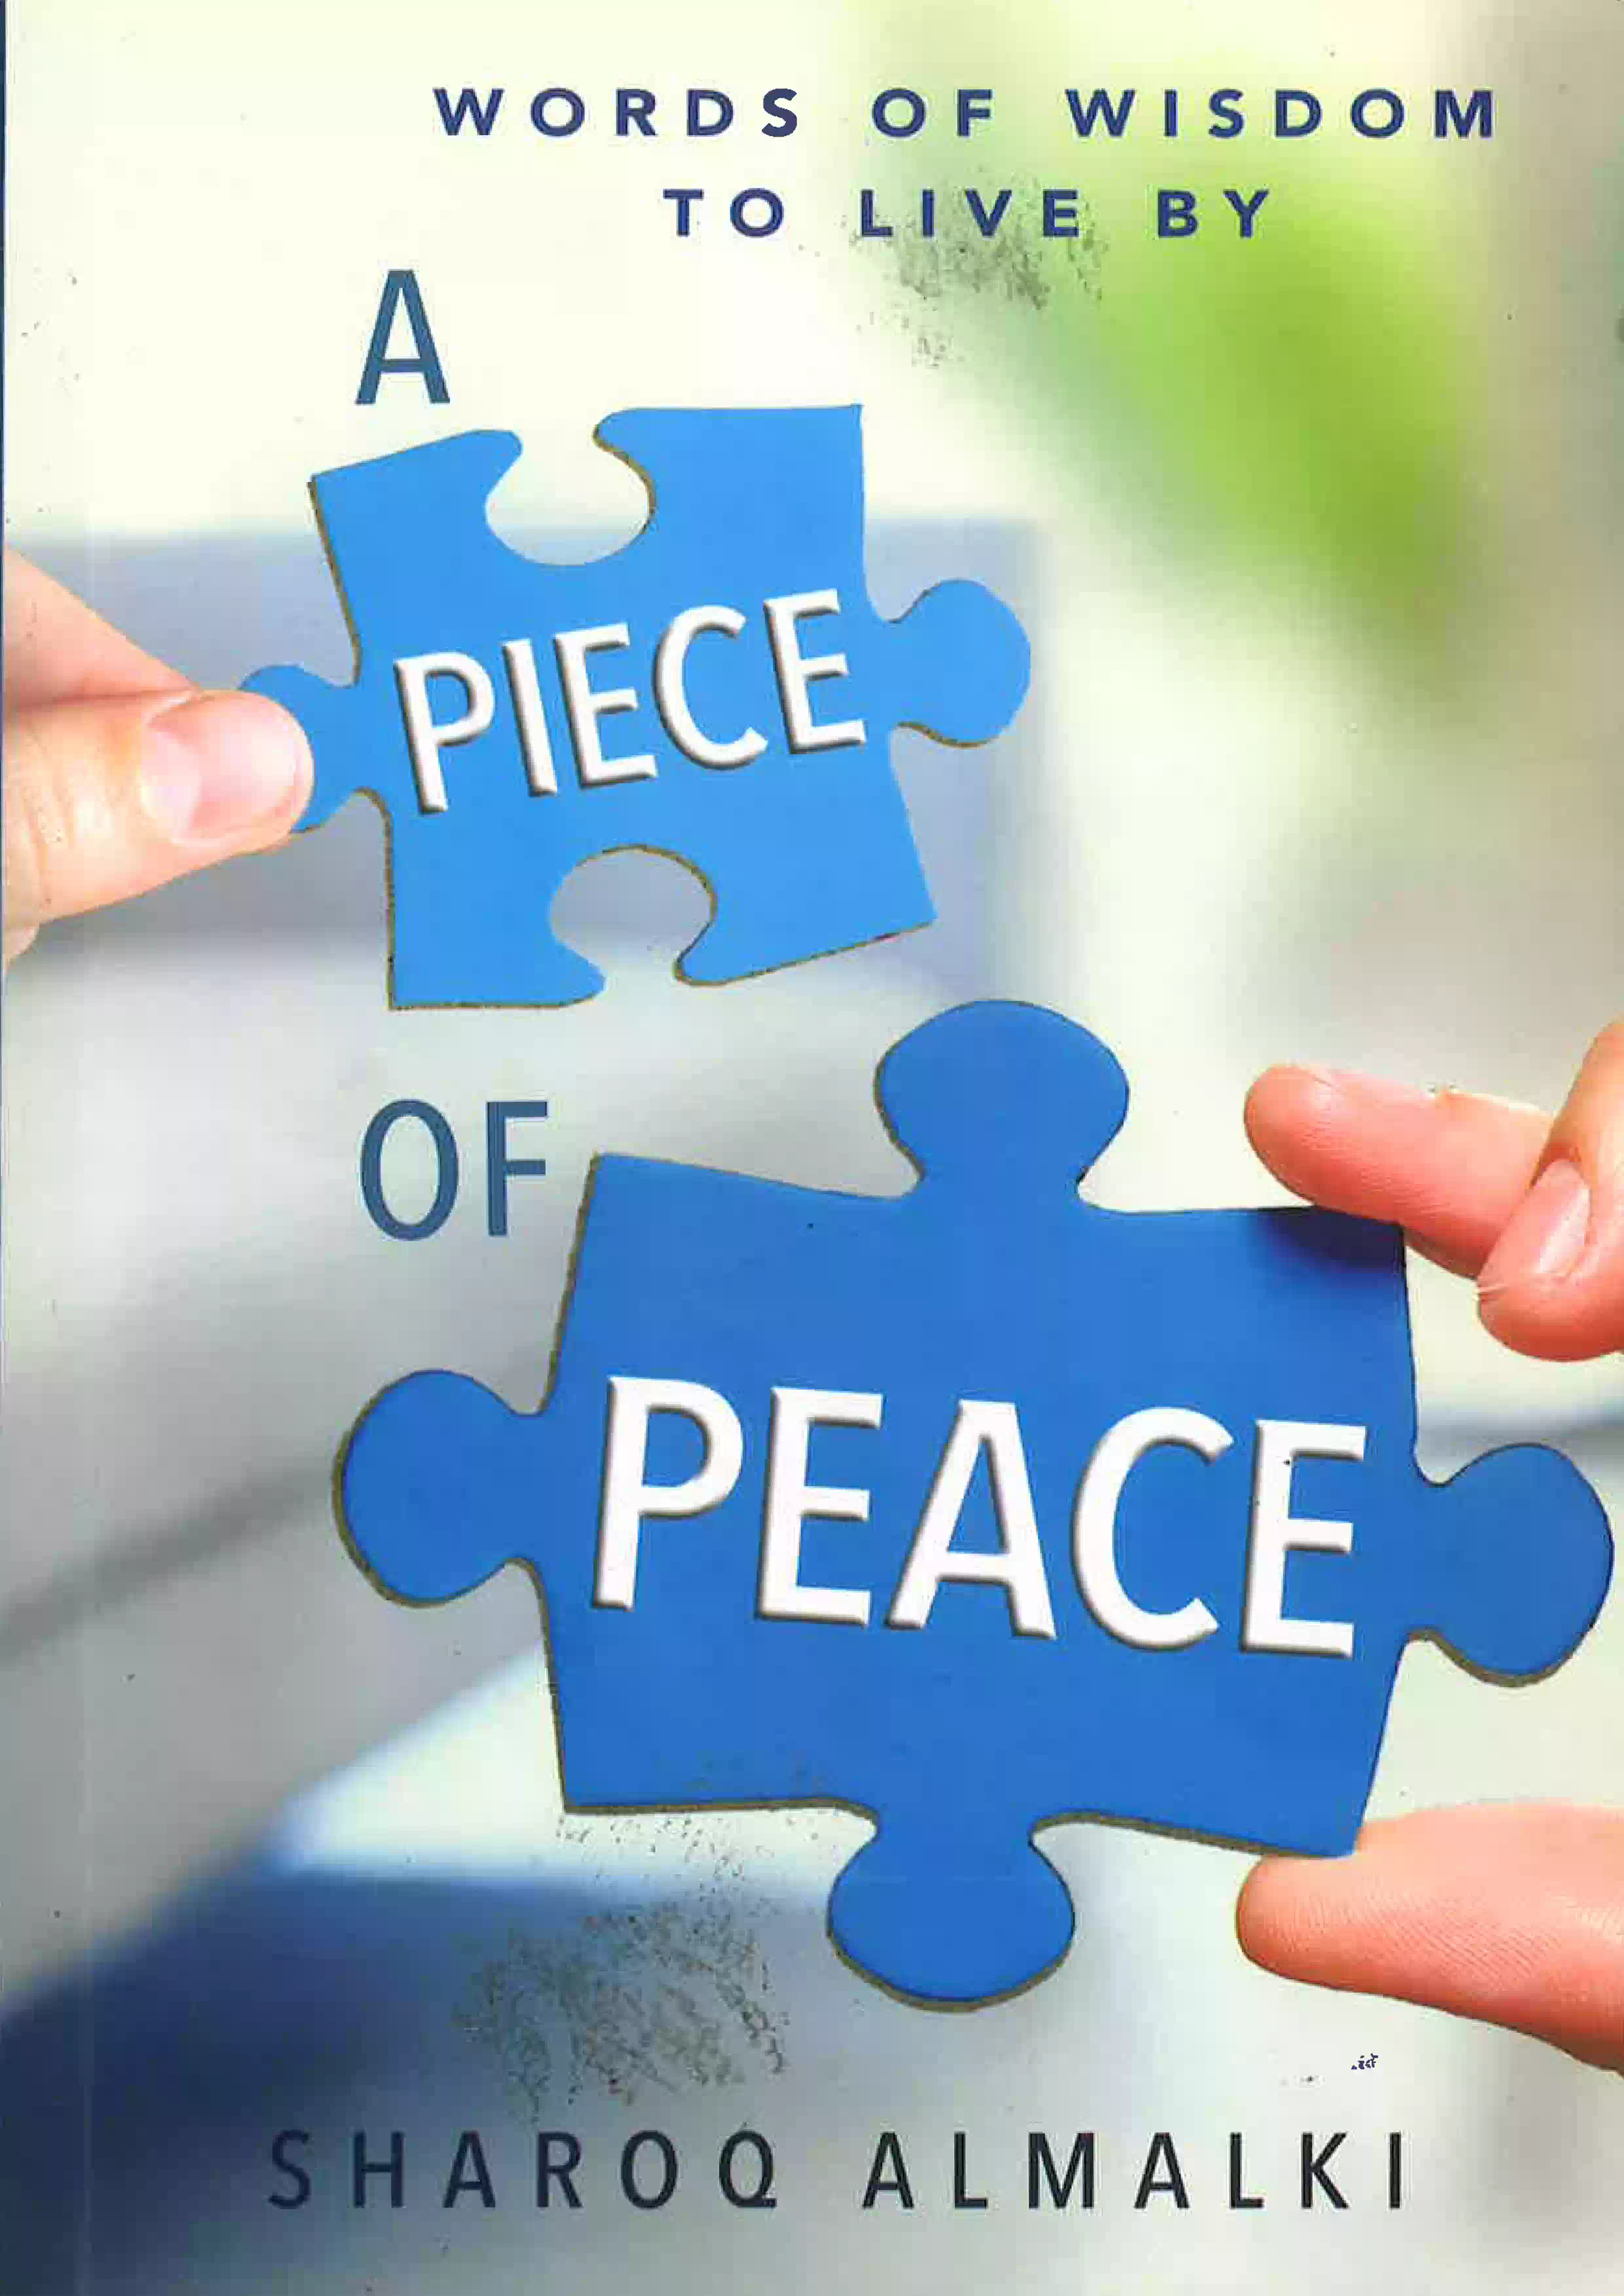 A Piece of PEACE